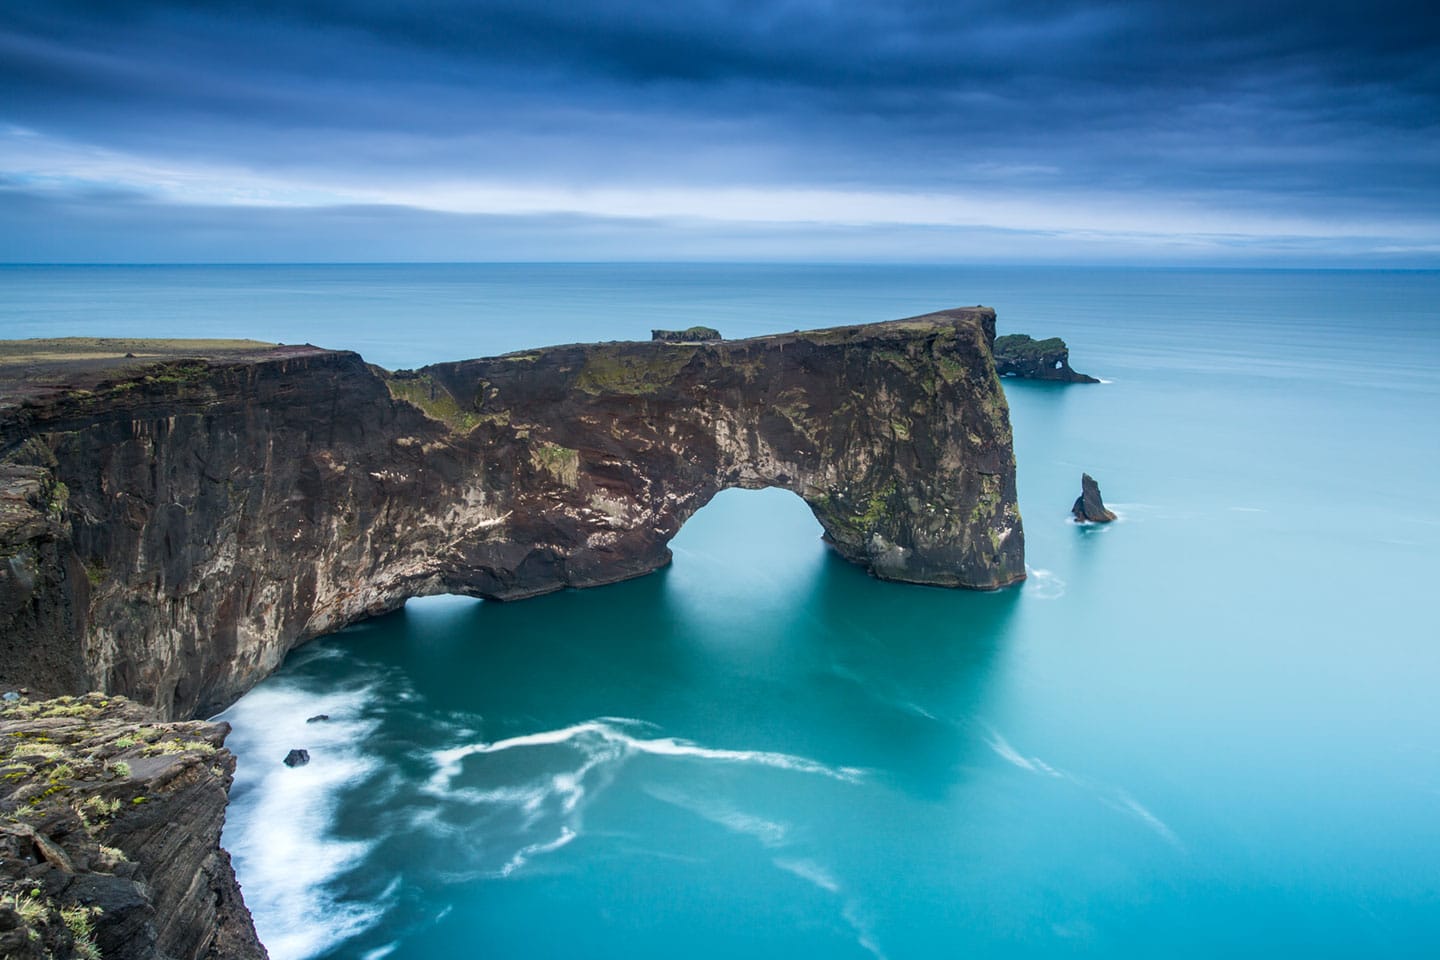 Dyrholaey arch formation in Iceland